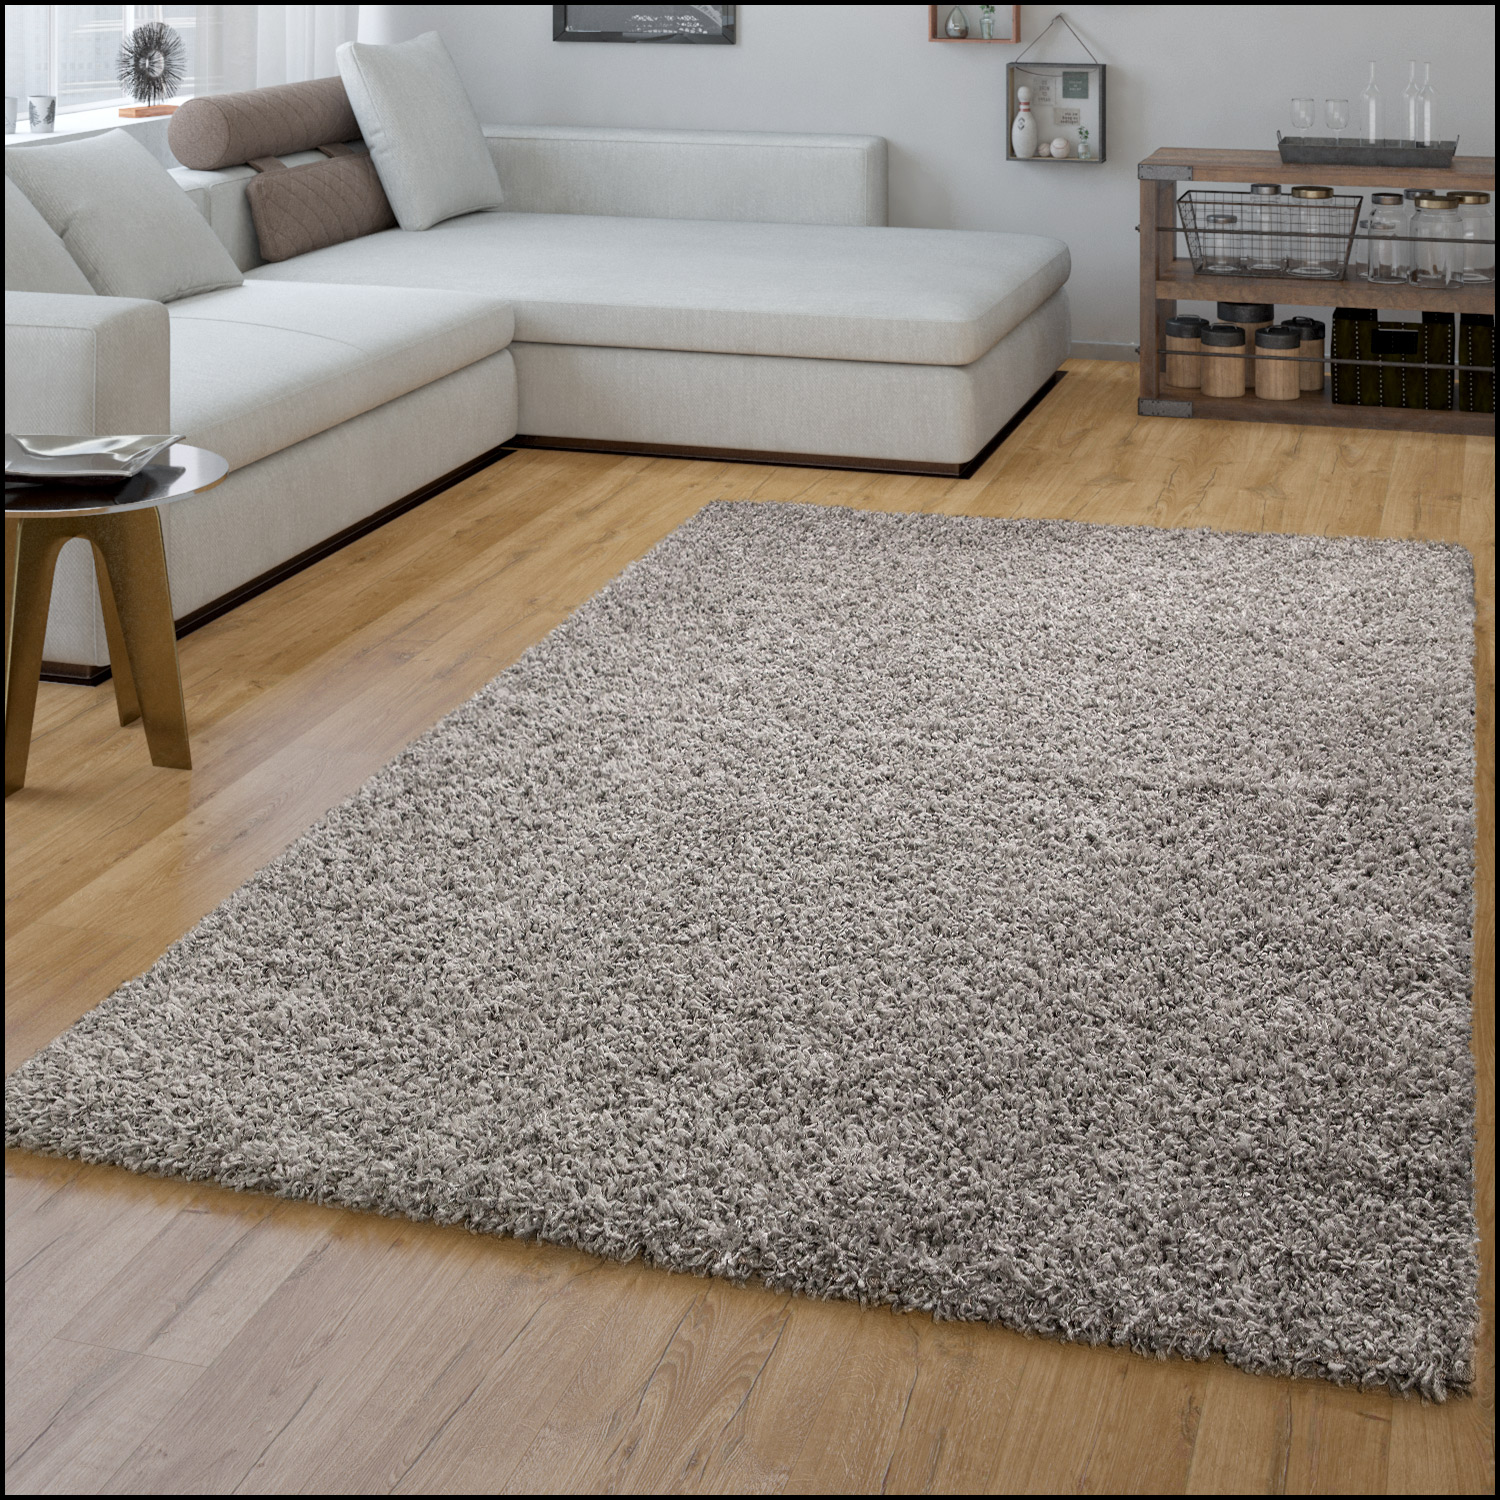 Modern Original Hochwertig Teppiche 'Solid' Beton Grau Best-Carpets Jede Größe 